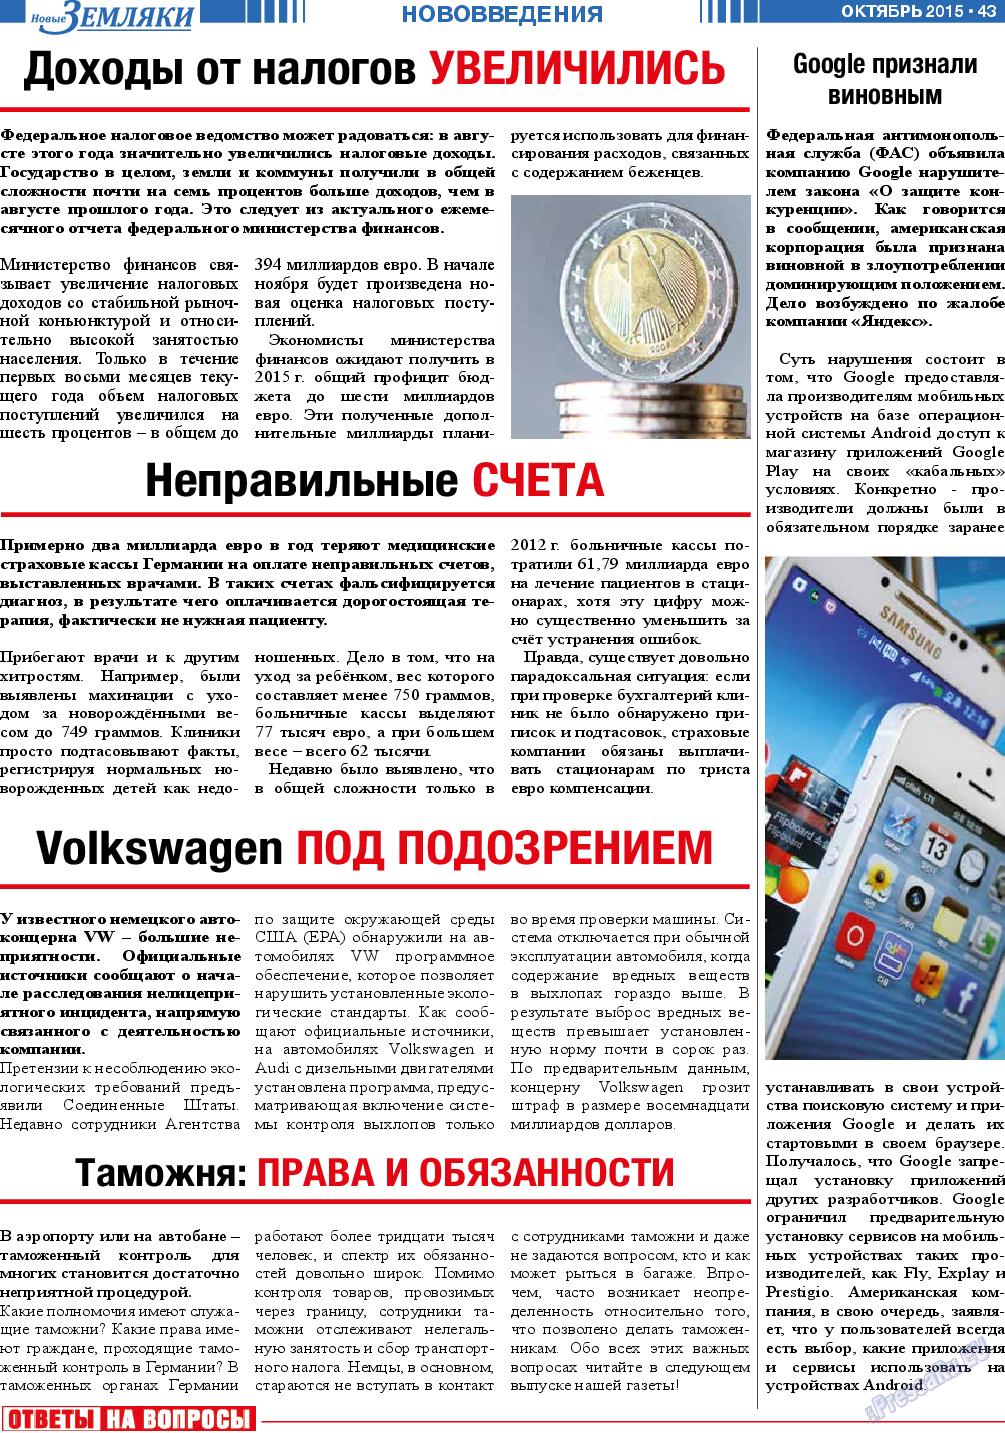 Новые Земляки, газета. 2015 №10 стр.43